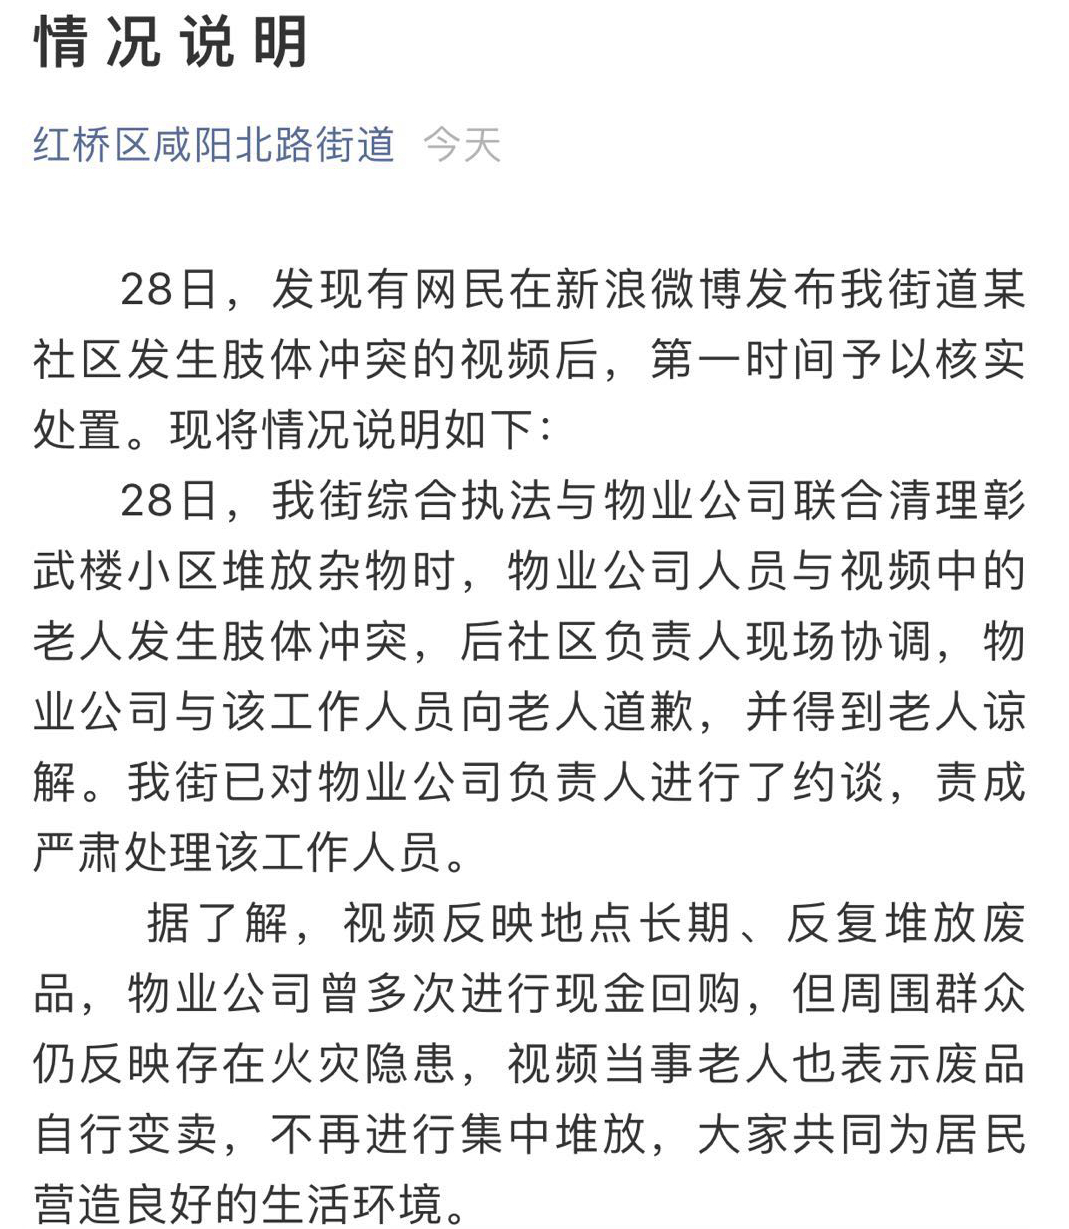 天津回应“拾荒老人遭暴力执法”：已约谈物业公司并责成严肃处理